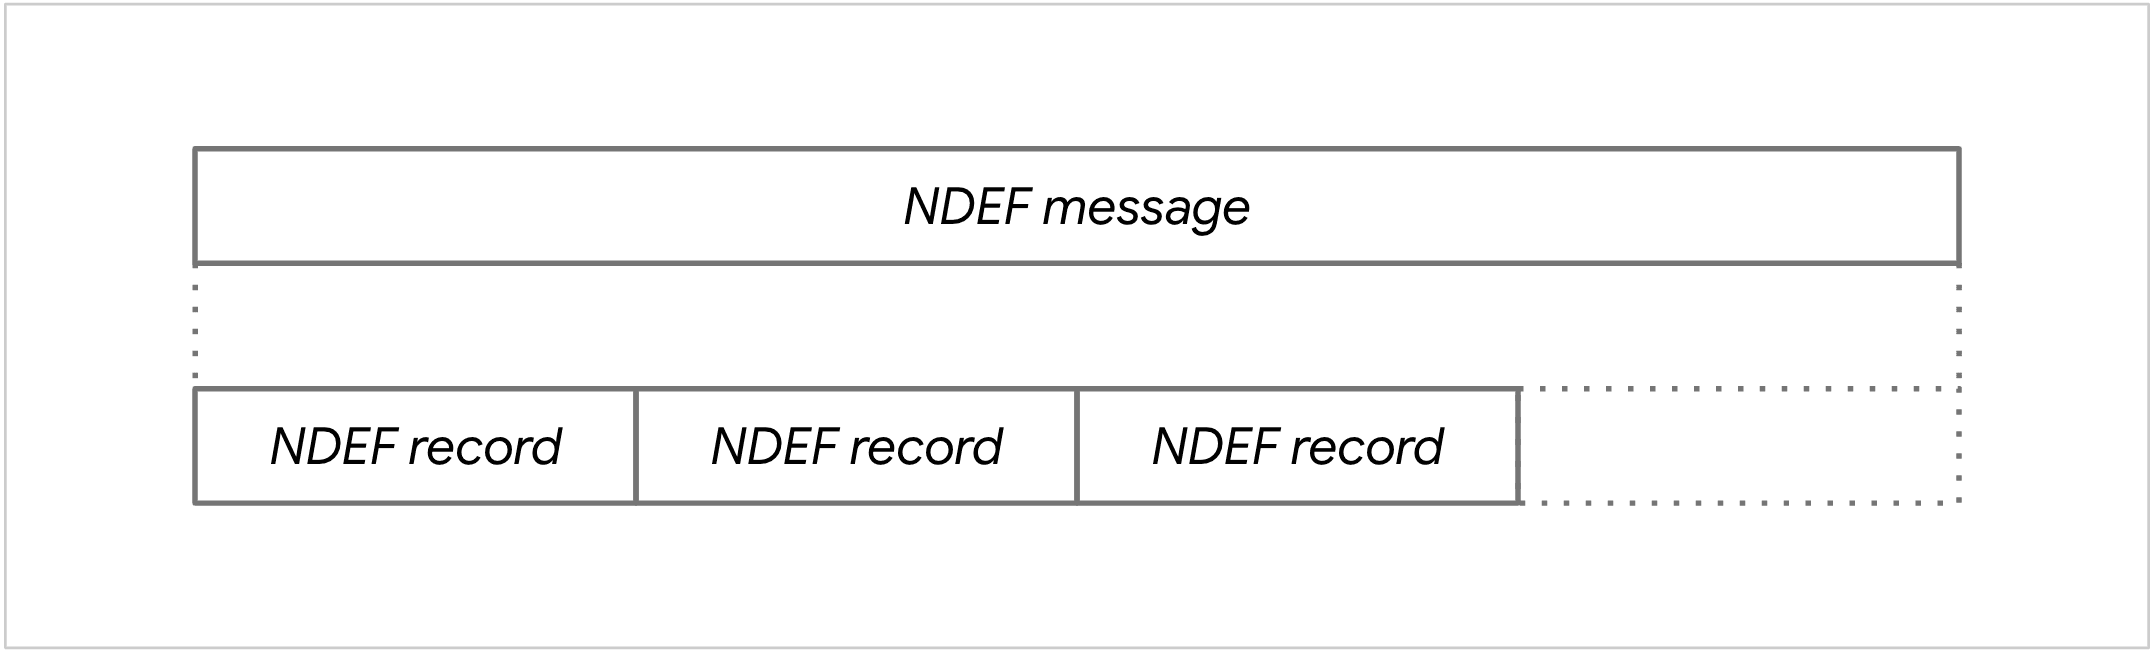 Diagrama de uma mensagem NDEF